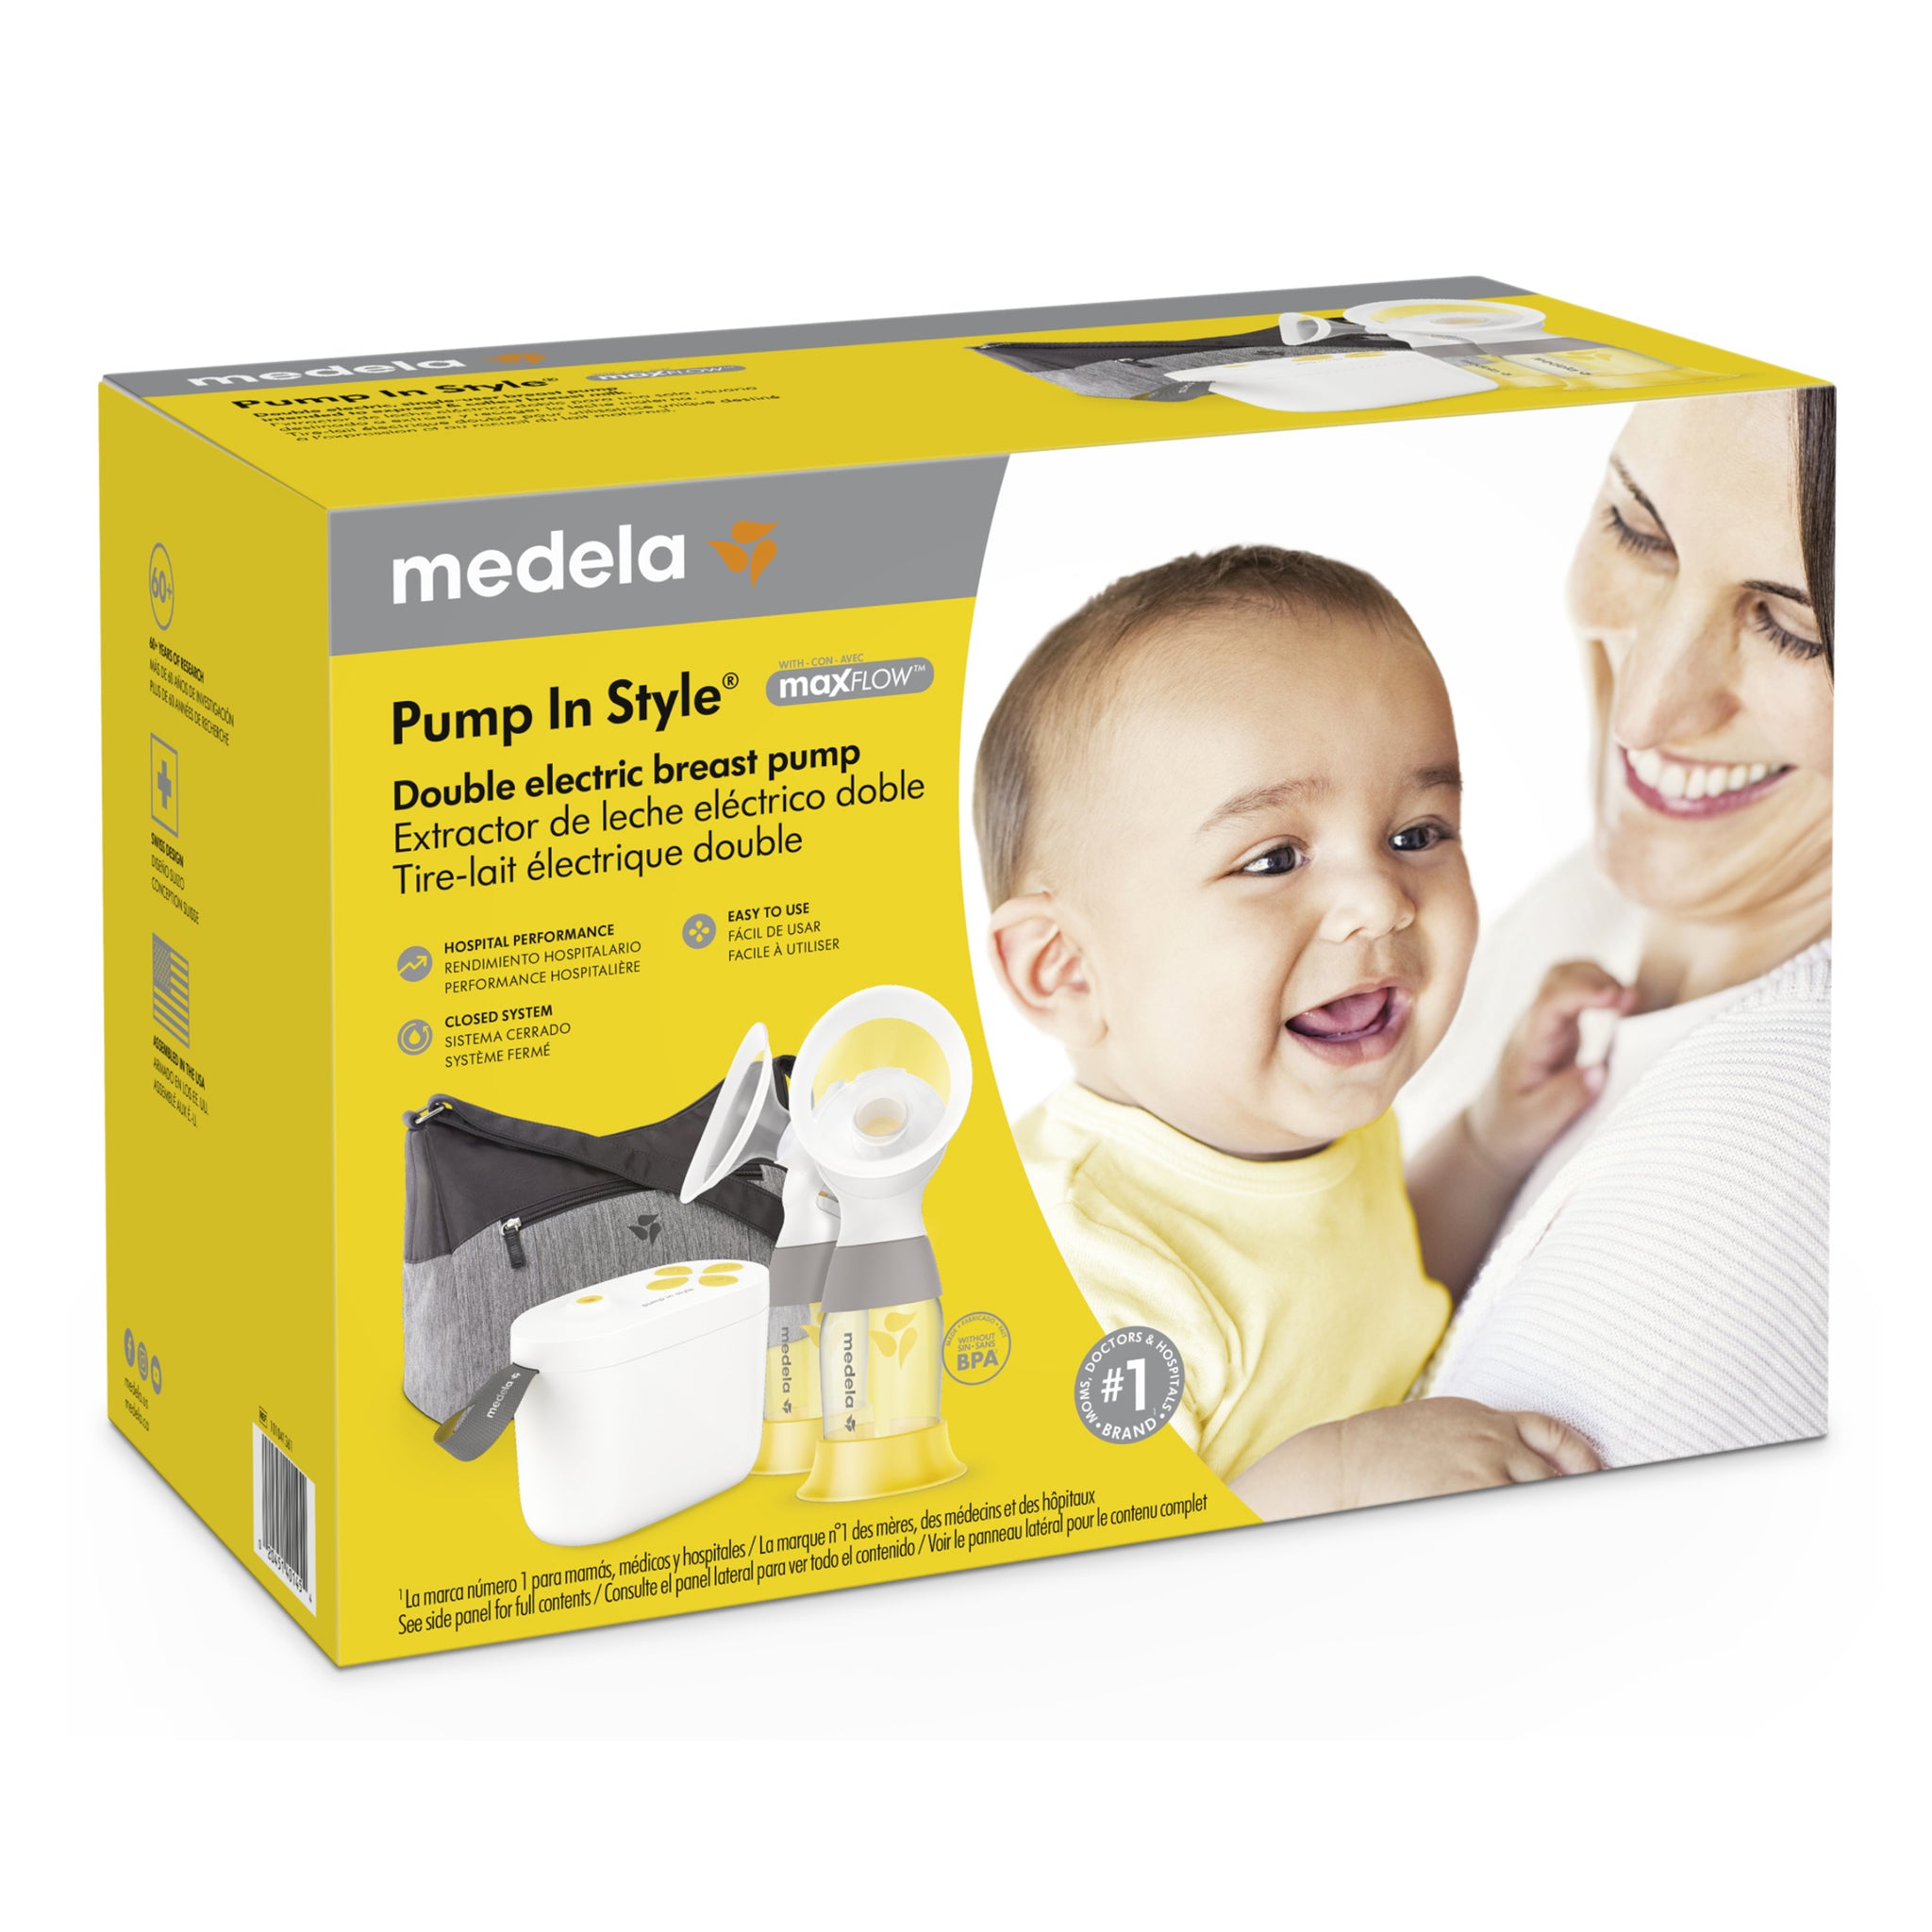 Medela Pump In Style Max Flow Breast Pump – CRAVINGS maternity